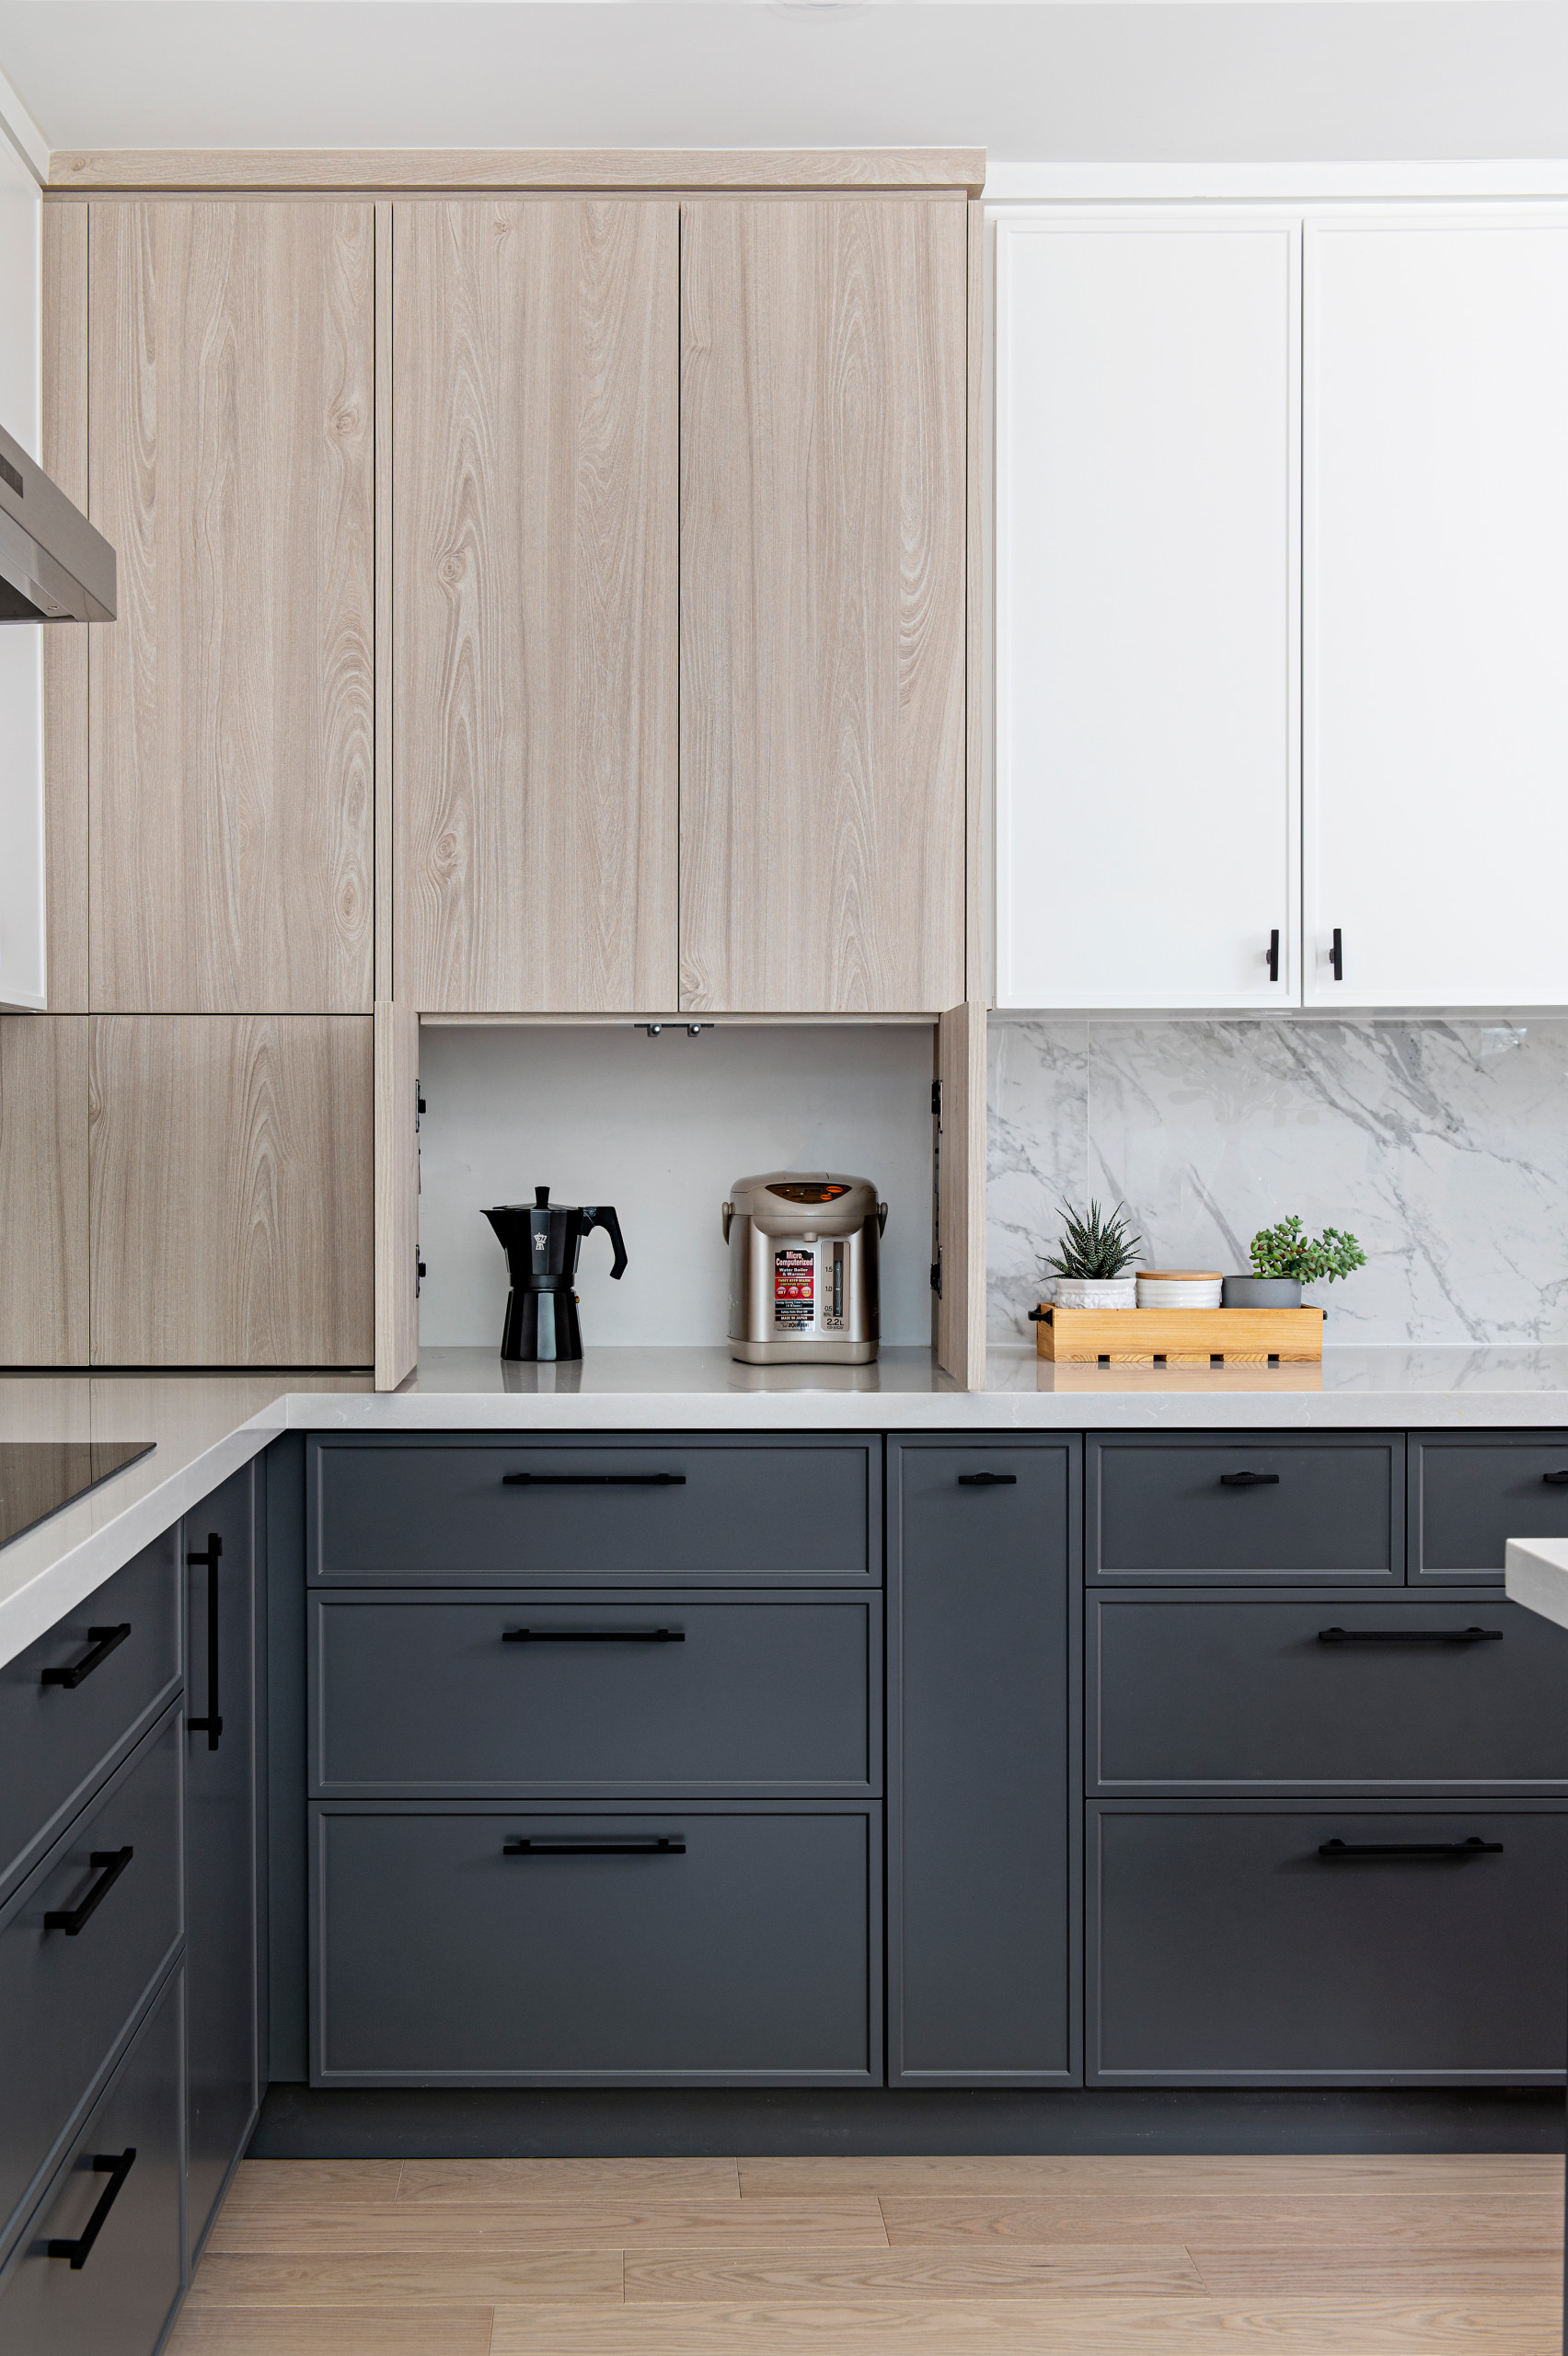 35 Stylish Shaker Style Kitchen Cabinet Ideas - Shelterness